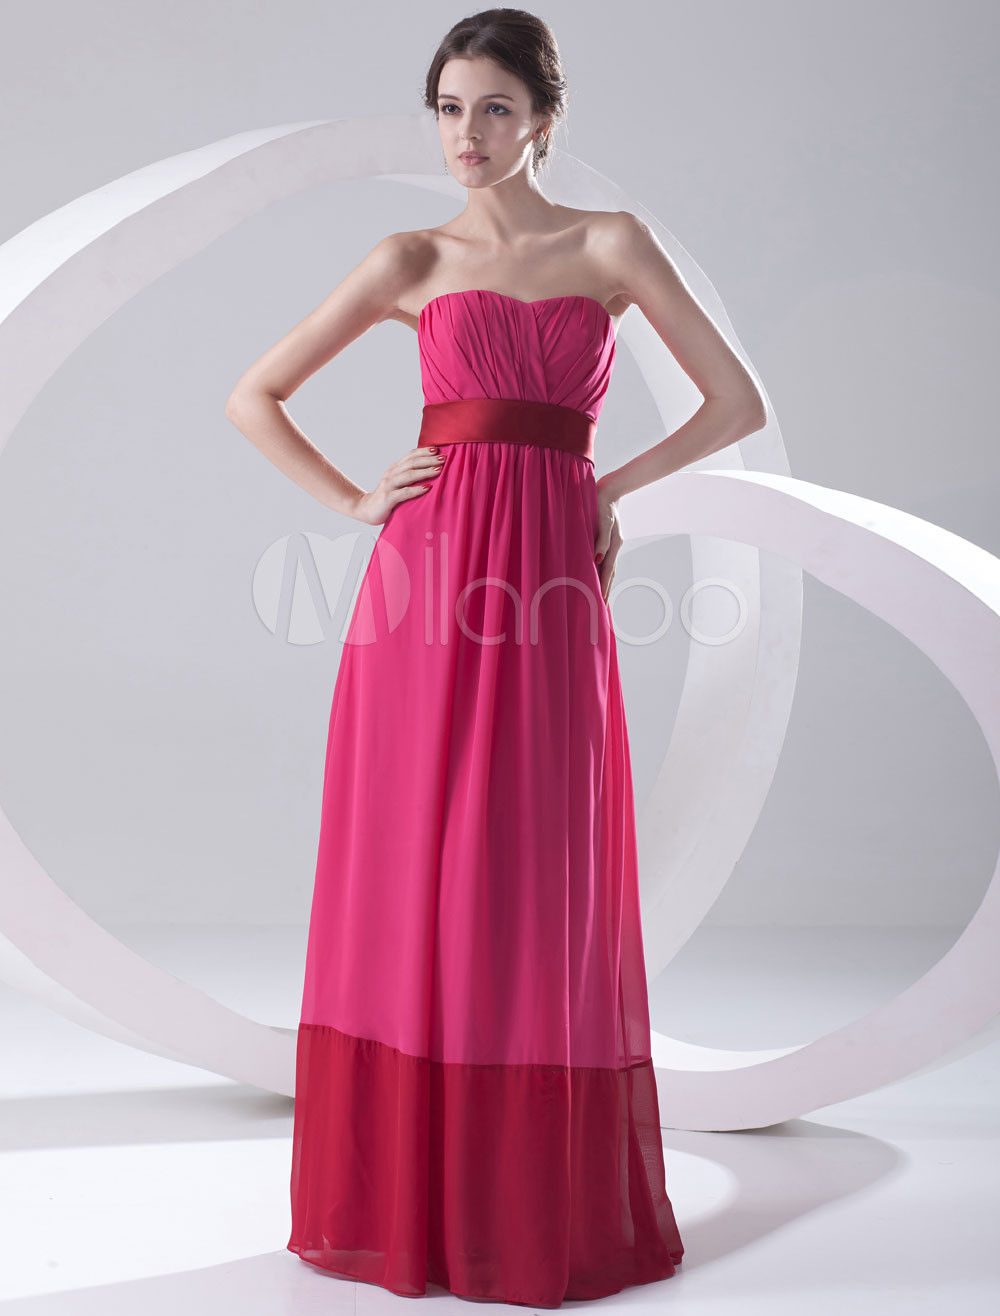 Chic Fuchsia Chiffon Ruched Sweetheart Women's Evening Dress - Milanoo.com